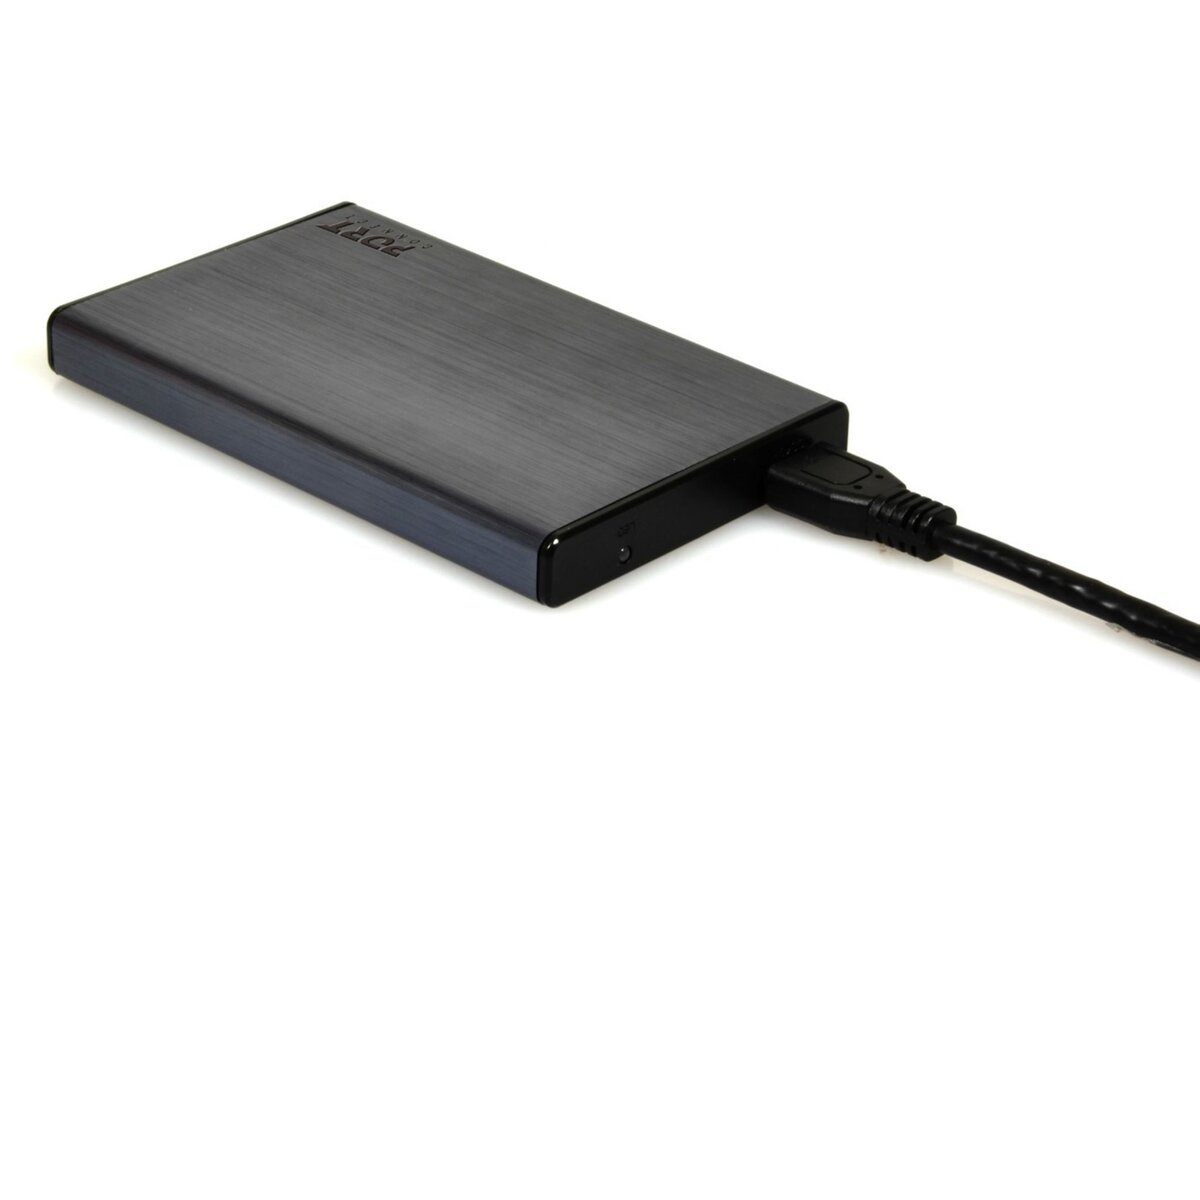 Acheter Boîtier USB 3.0 pour Disque Dur S-ATA 2.5', Format 2.5